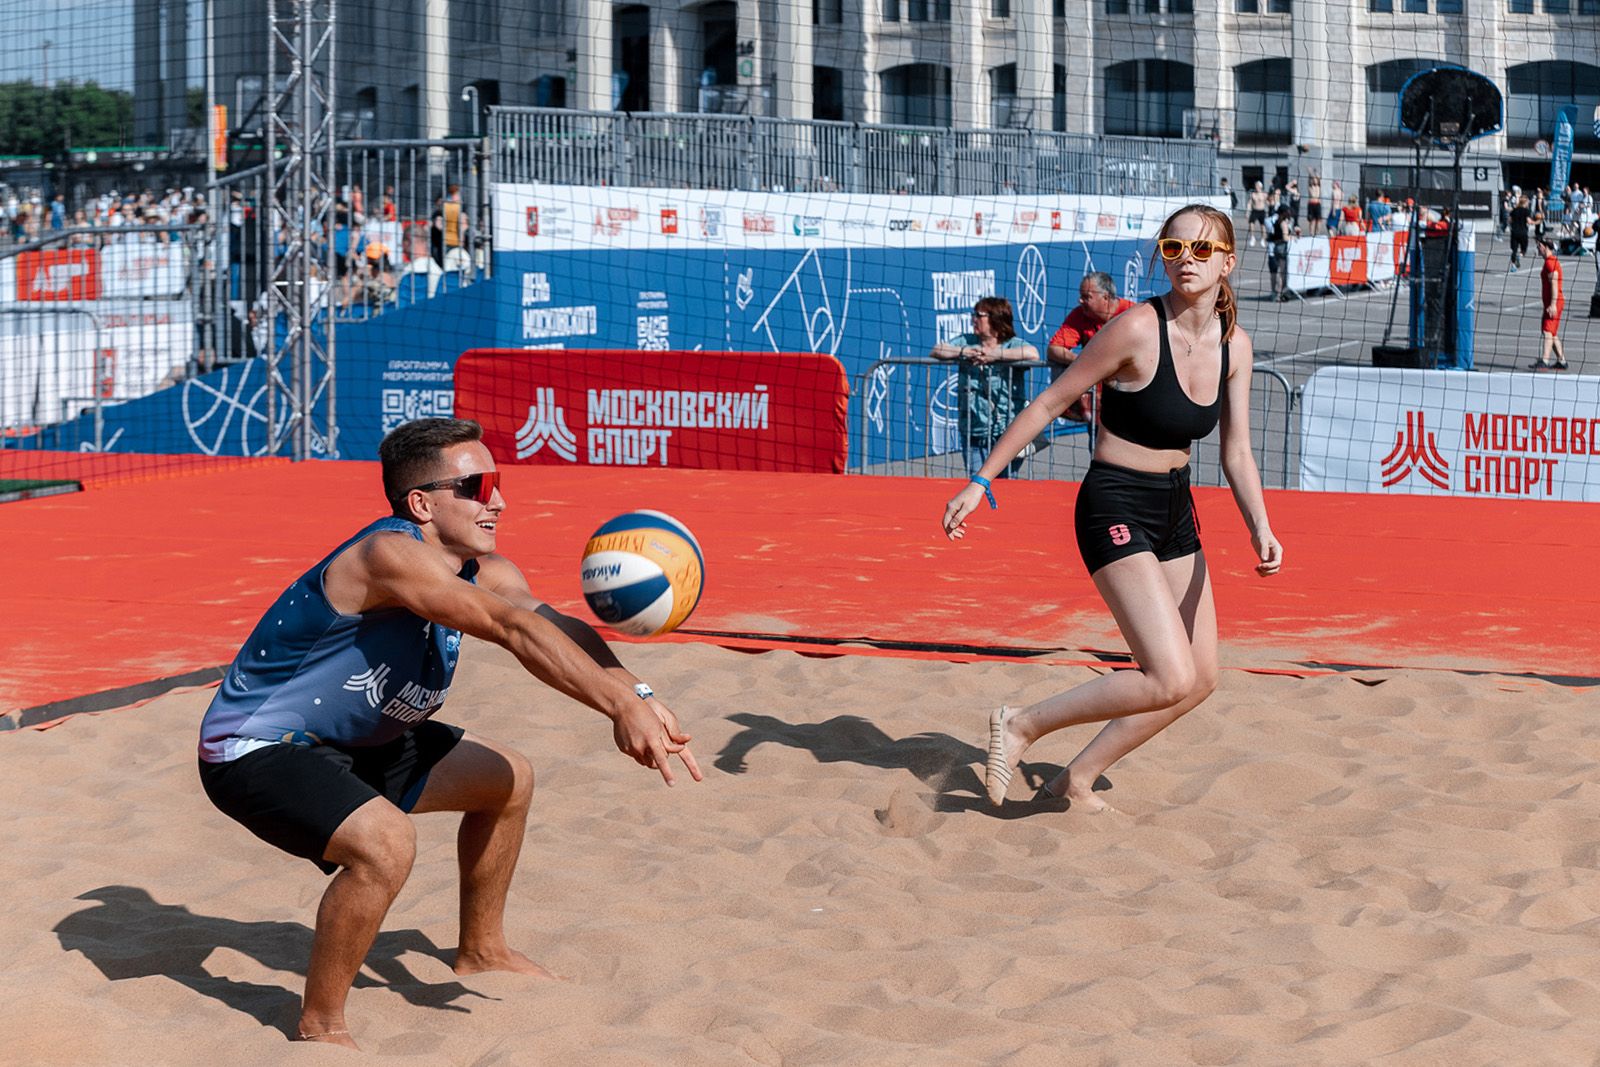 Бесплатное занятие по волейболу состоится 4 июля в Обручевском районе